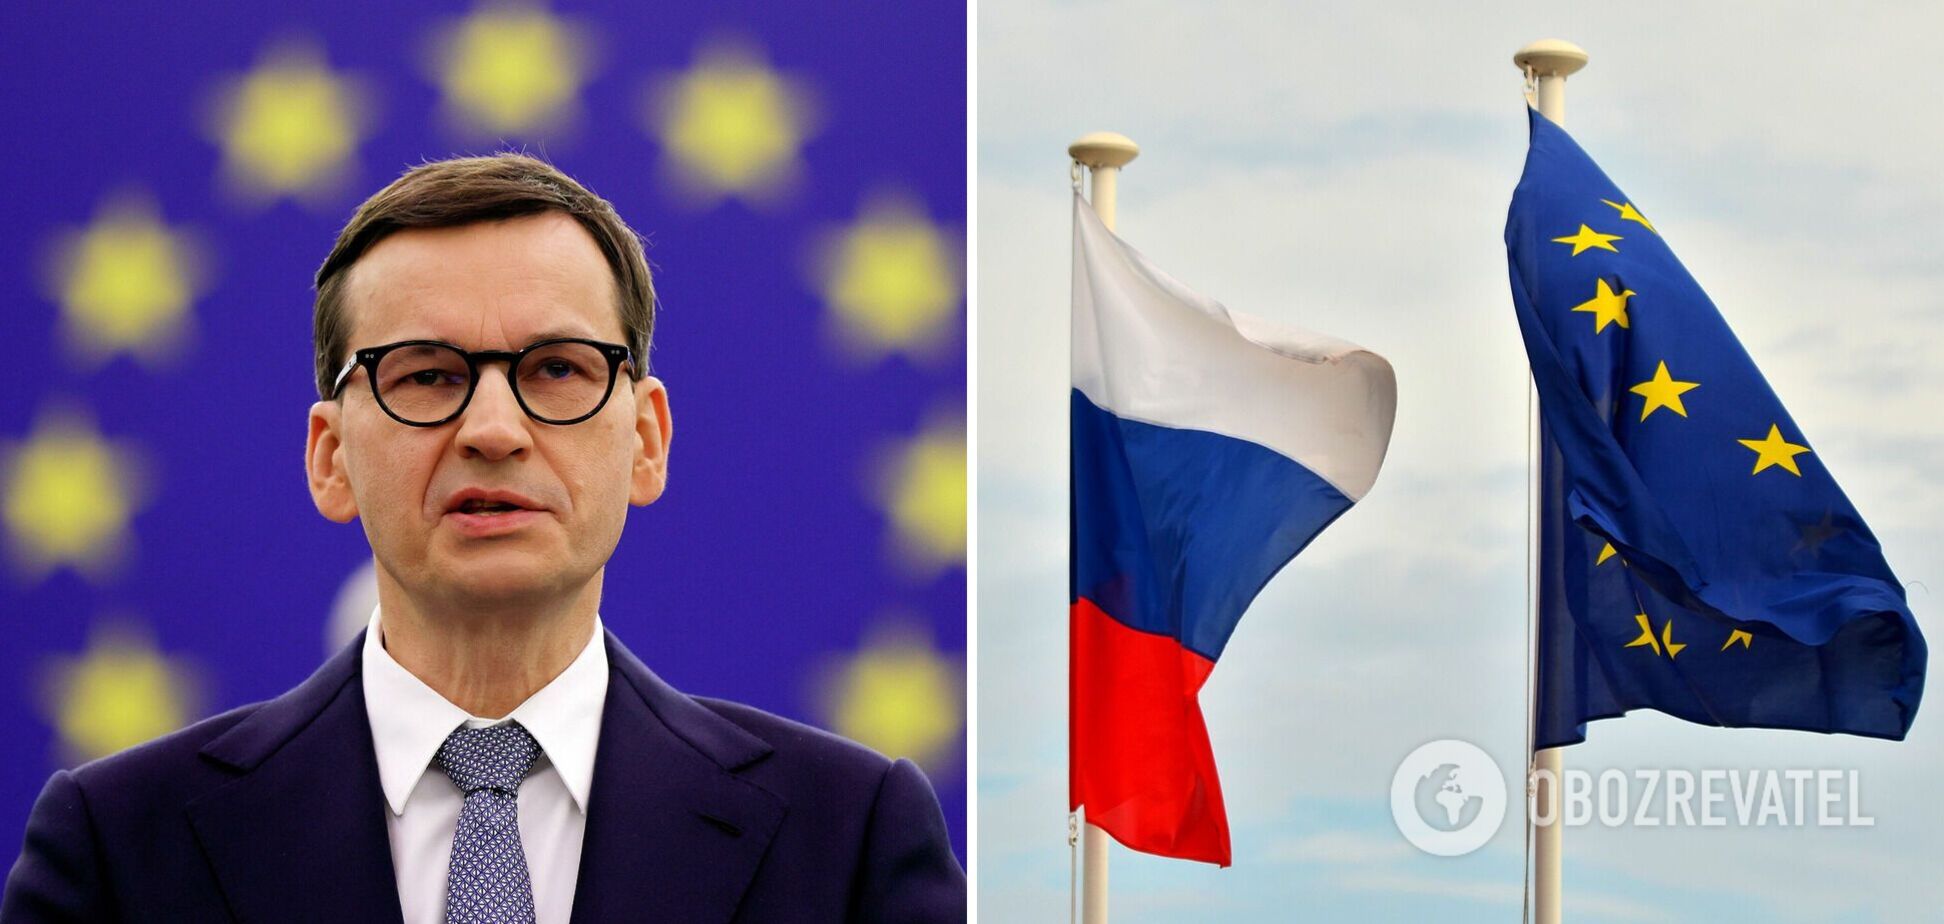 В ЕС возникли разногласия из-за масштаба санкций против РФ, – премьер Польши